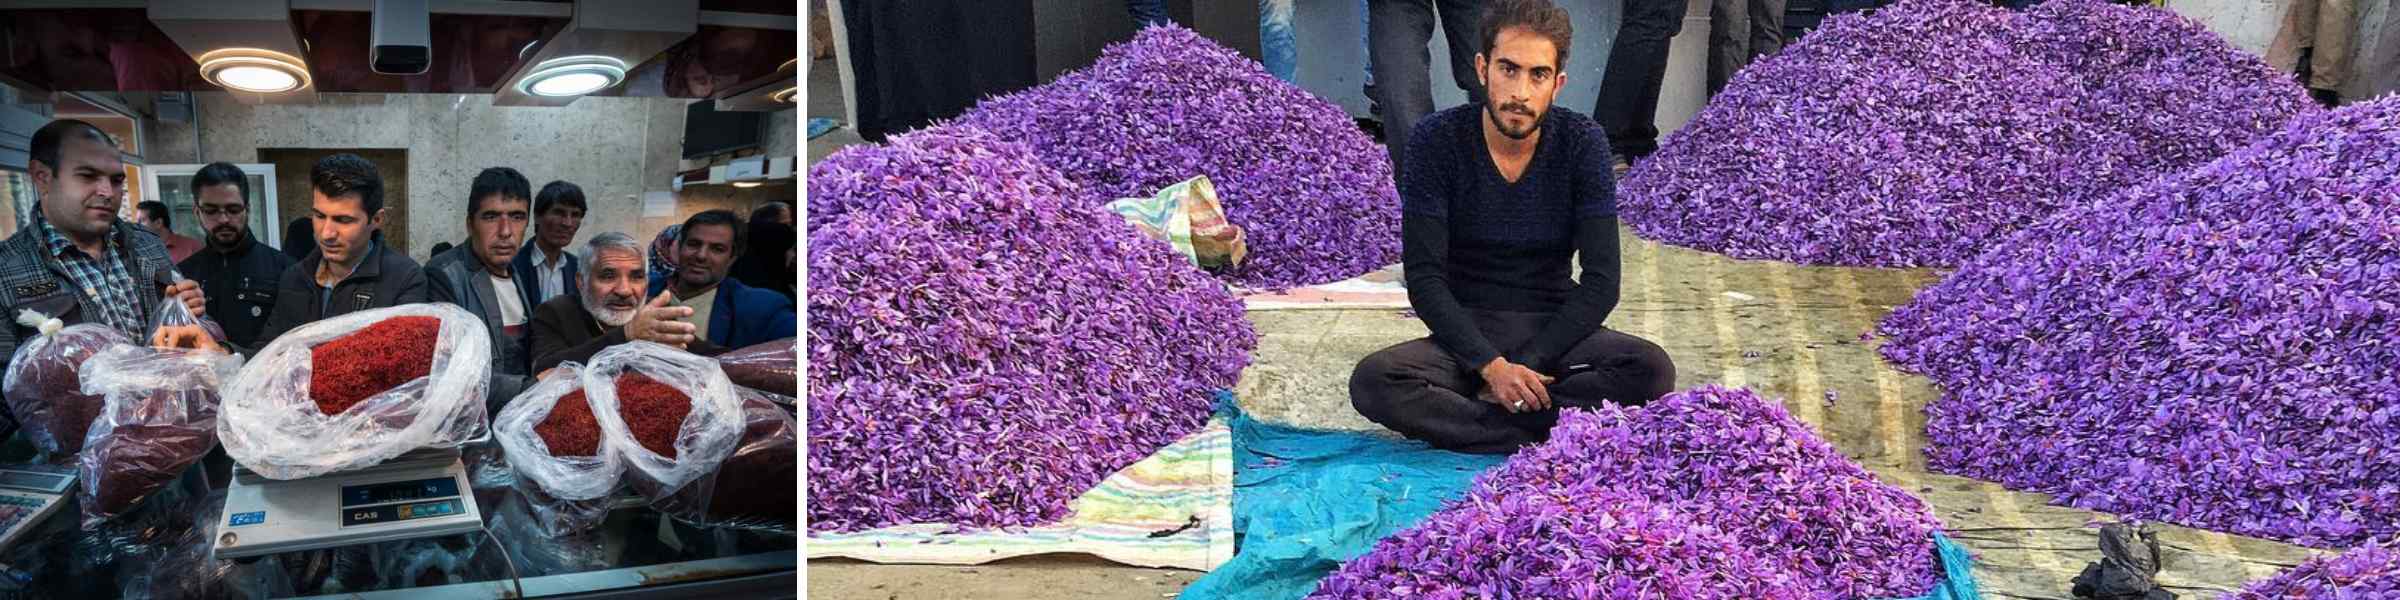 The Economic Impact of Saffron in Iran